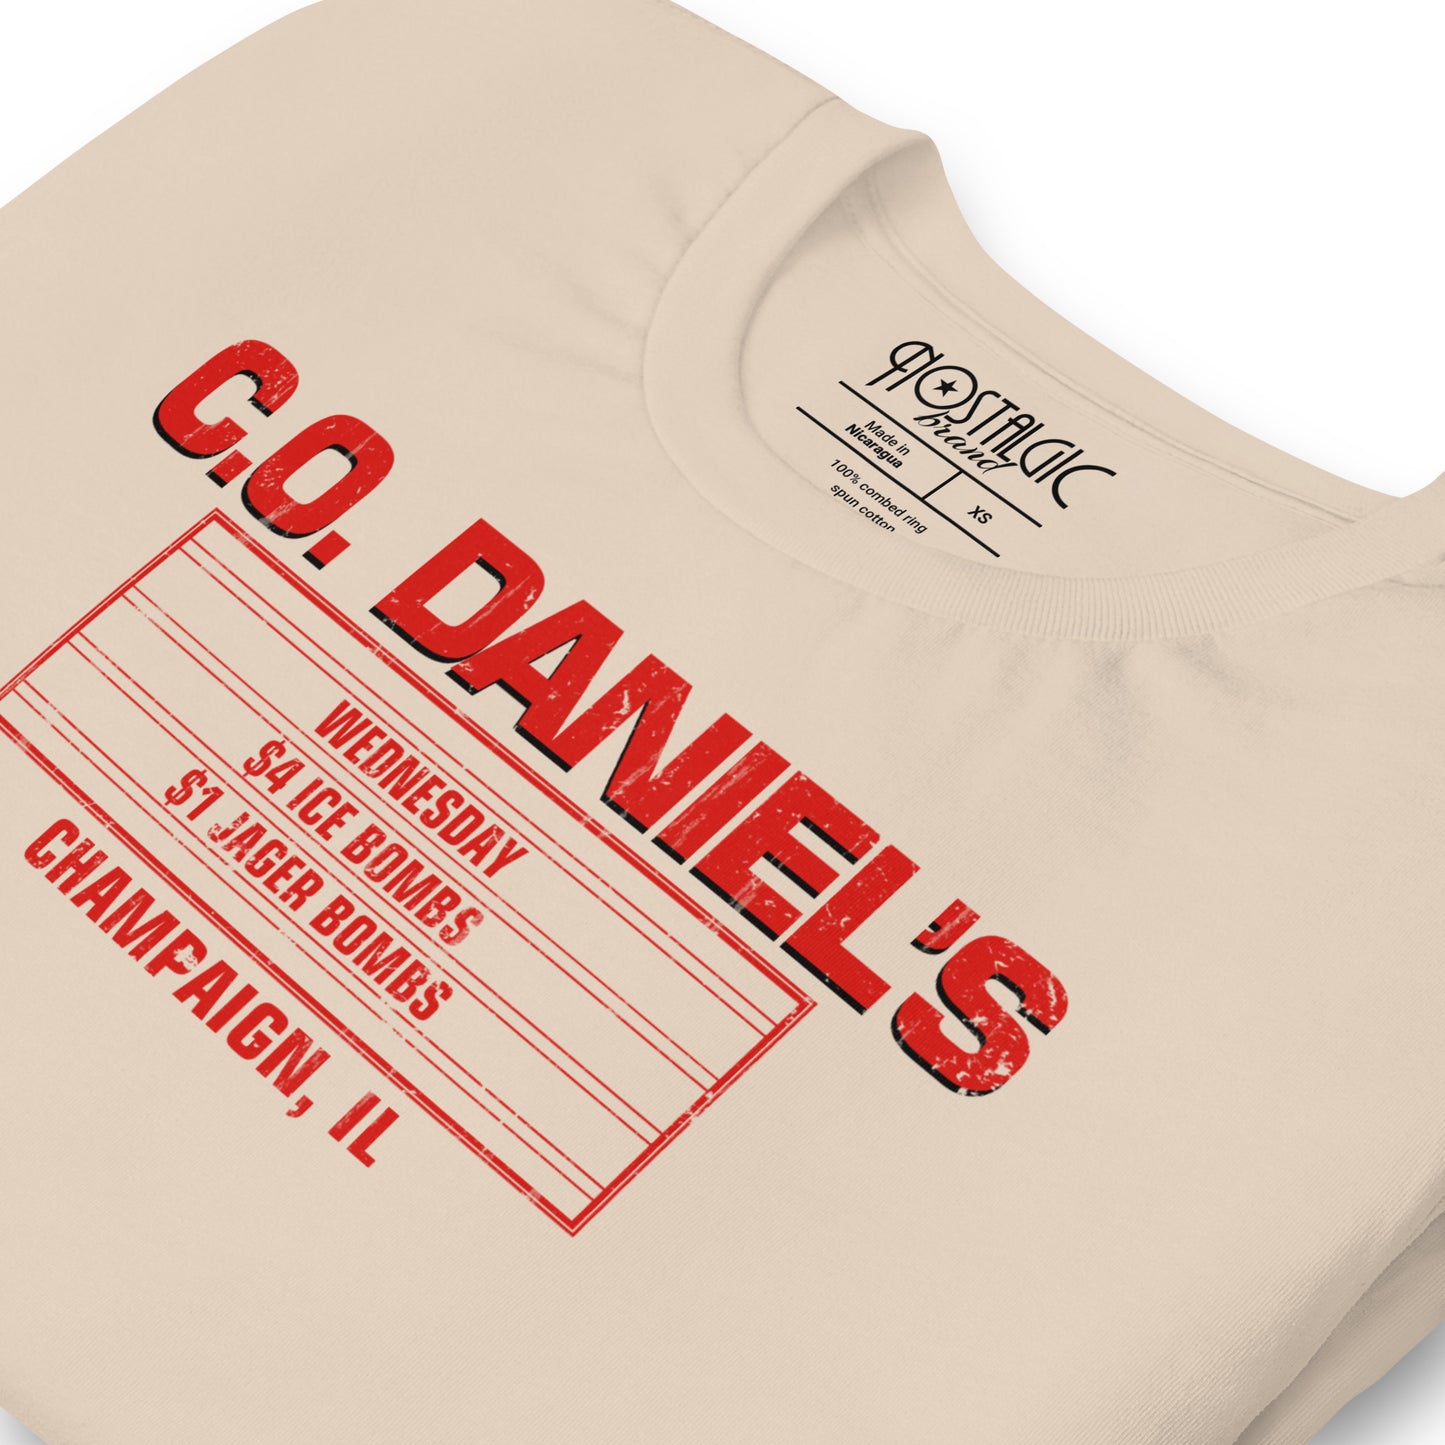 C.O. Daniel's